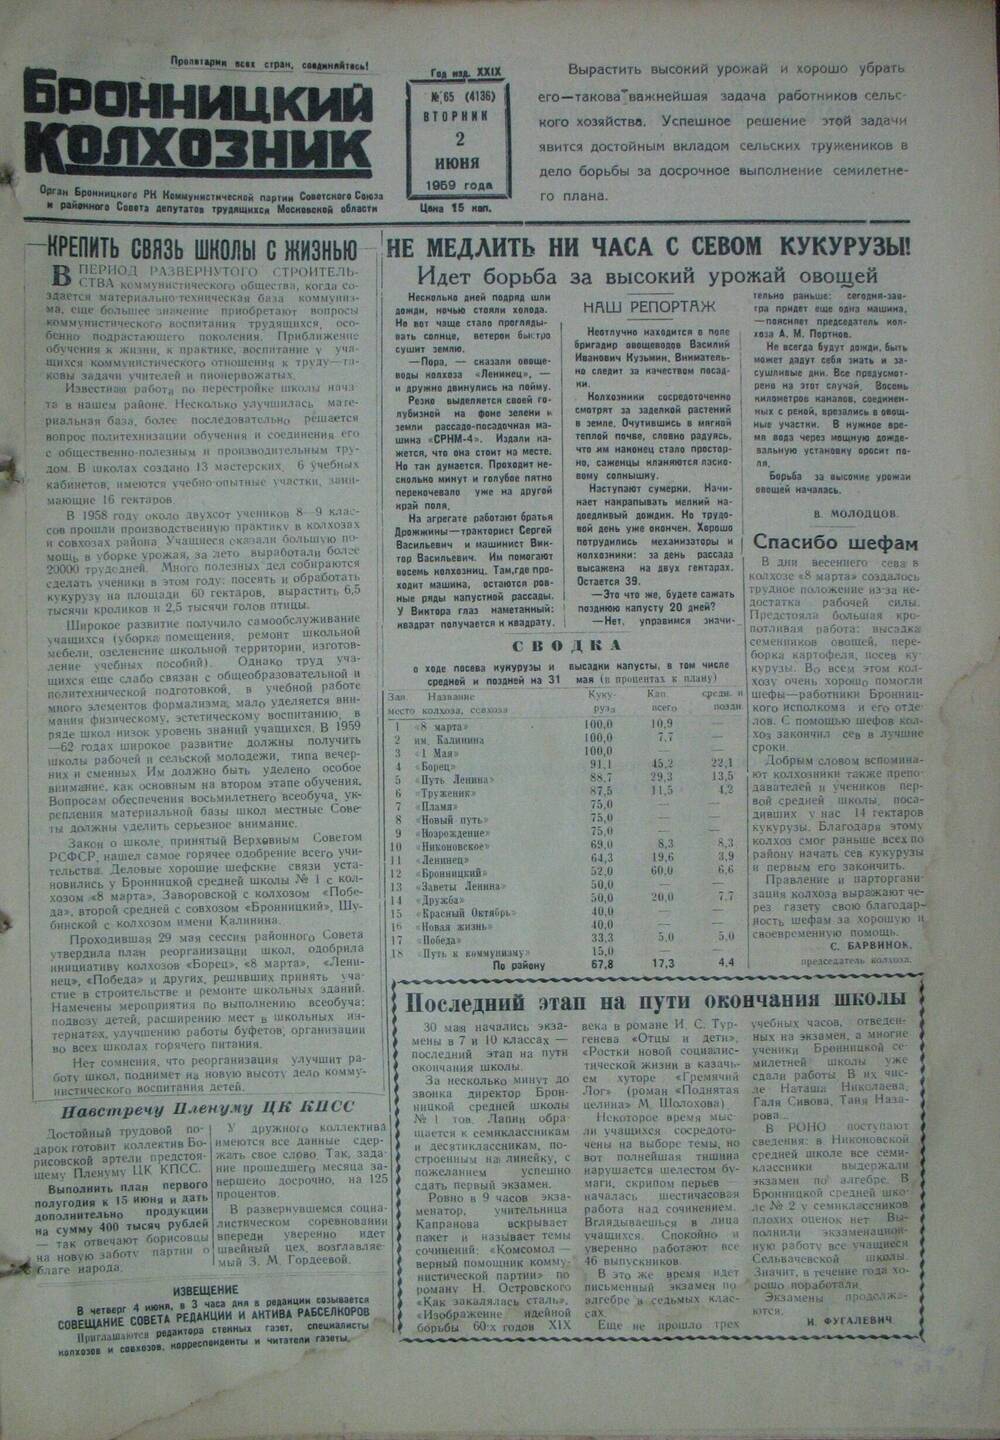 Бронницкий колхозник,  газета № 65 от 2 июня 1959г